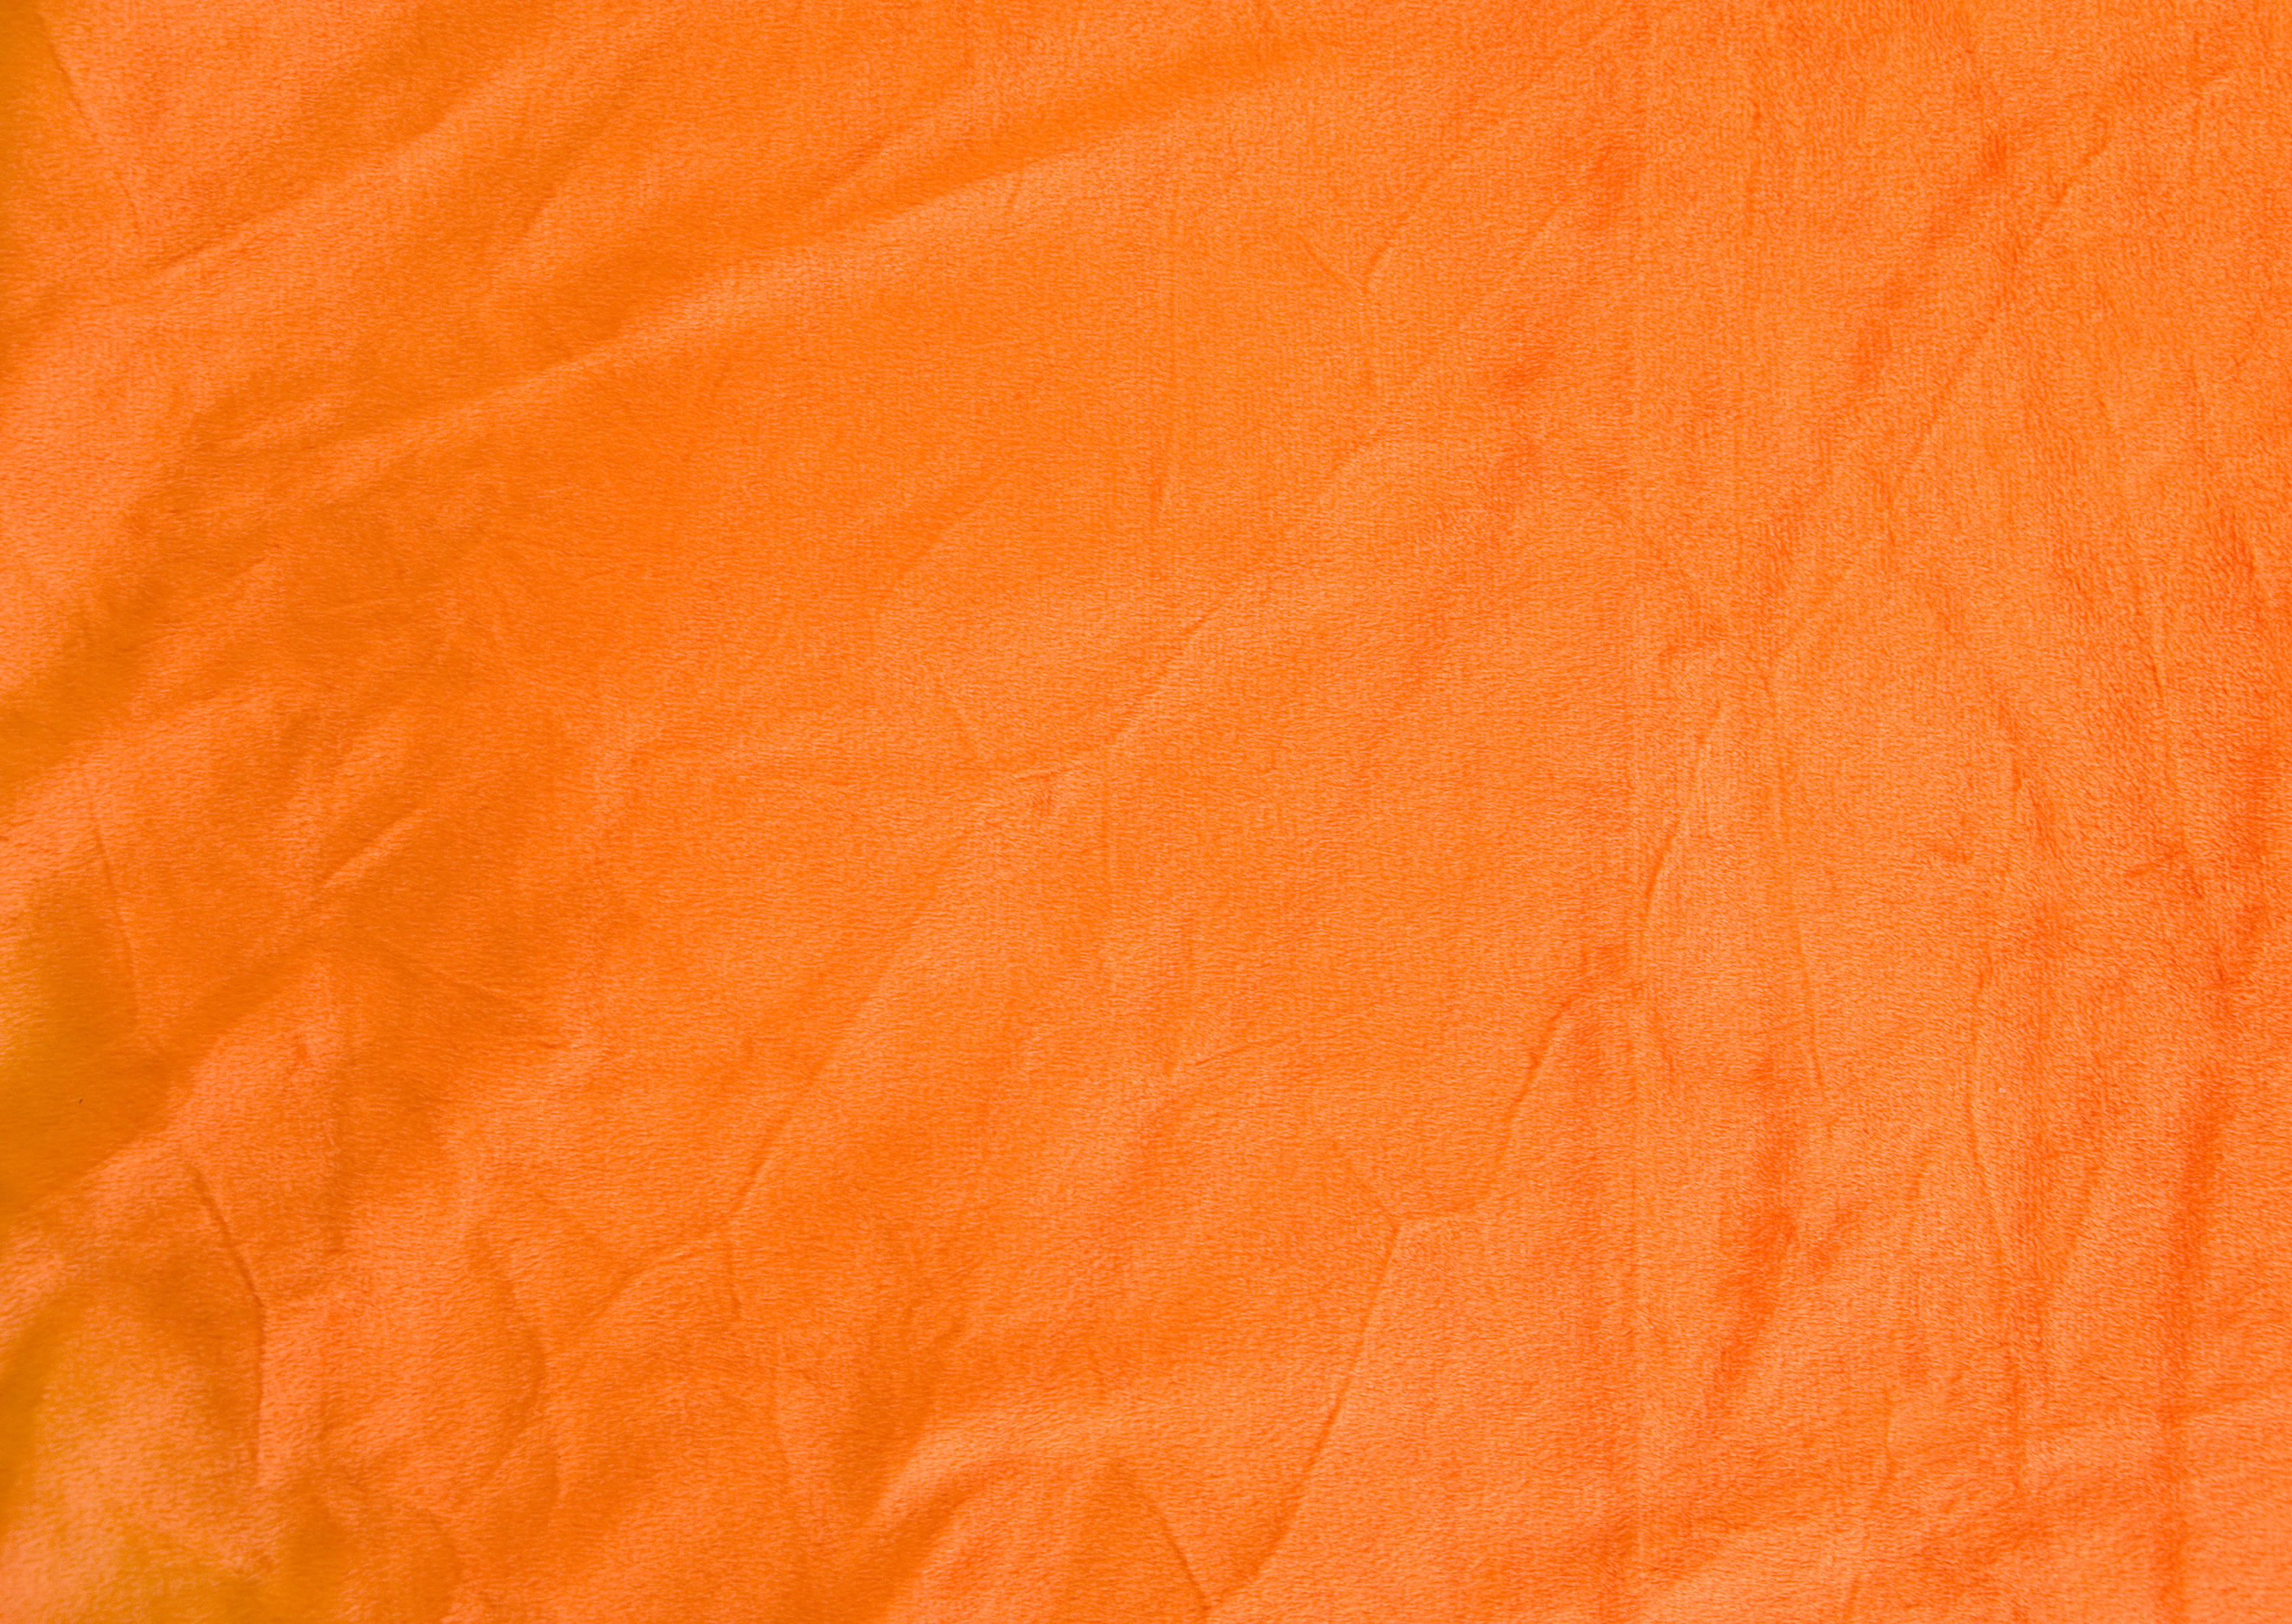 Texture vải lụa cam là sự kết hợp độc đáo của màu sắc và chất liệu. Nó là lựa chọn hoàn hảo để trang trí cho các không gian sang trọng và đẳng cấp. Hãy để texture này tạo nên sự khác biệt cho không gian của bạn.